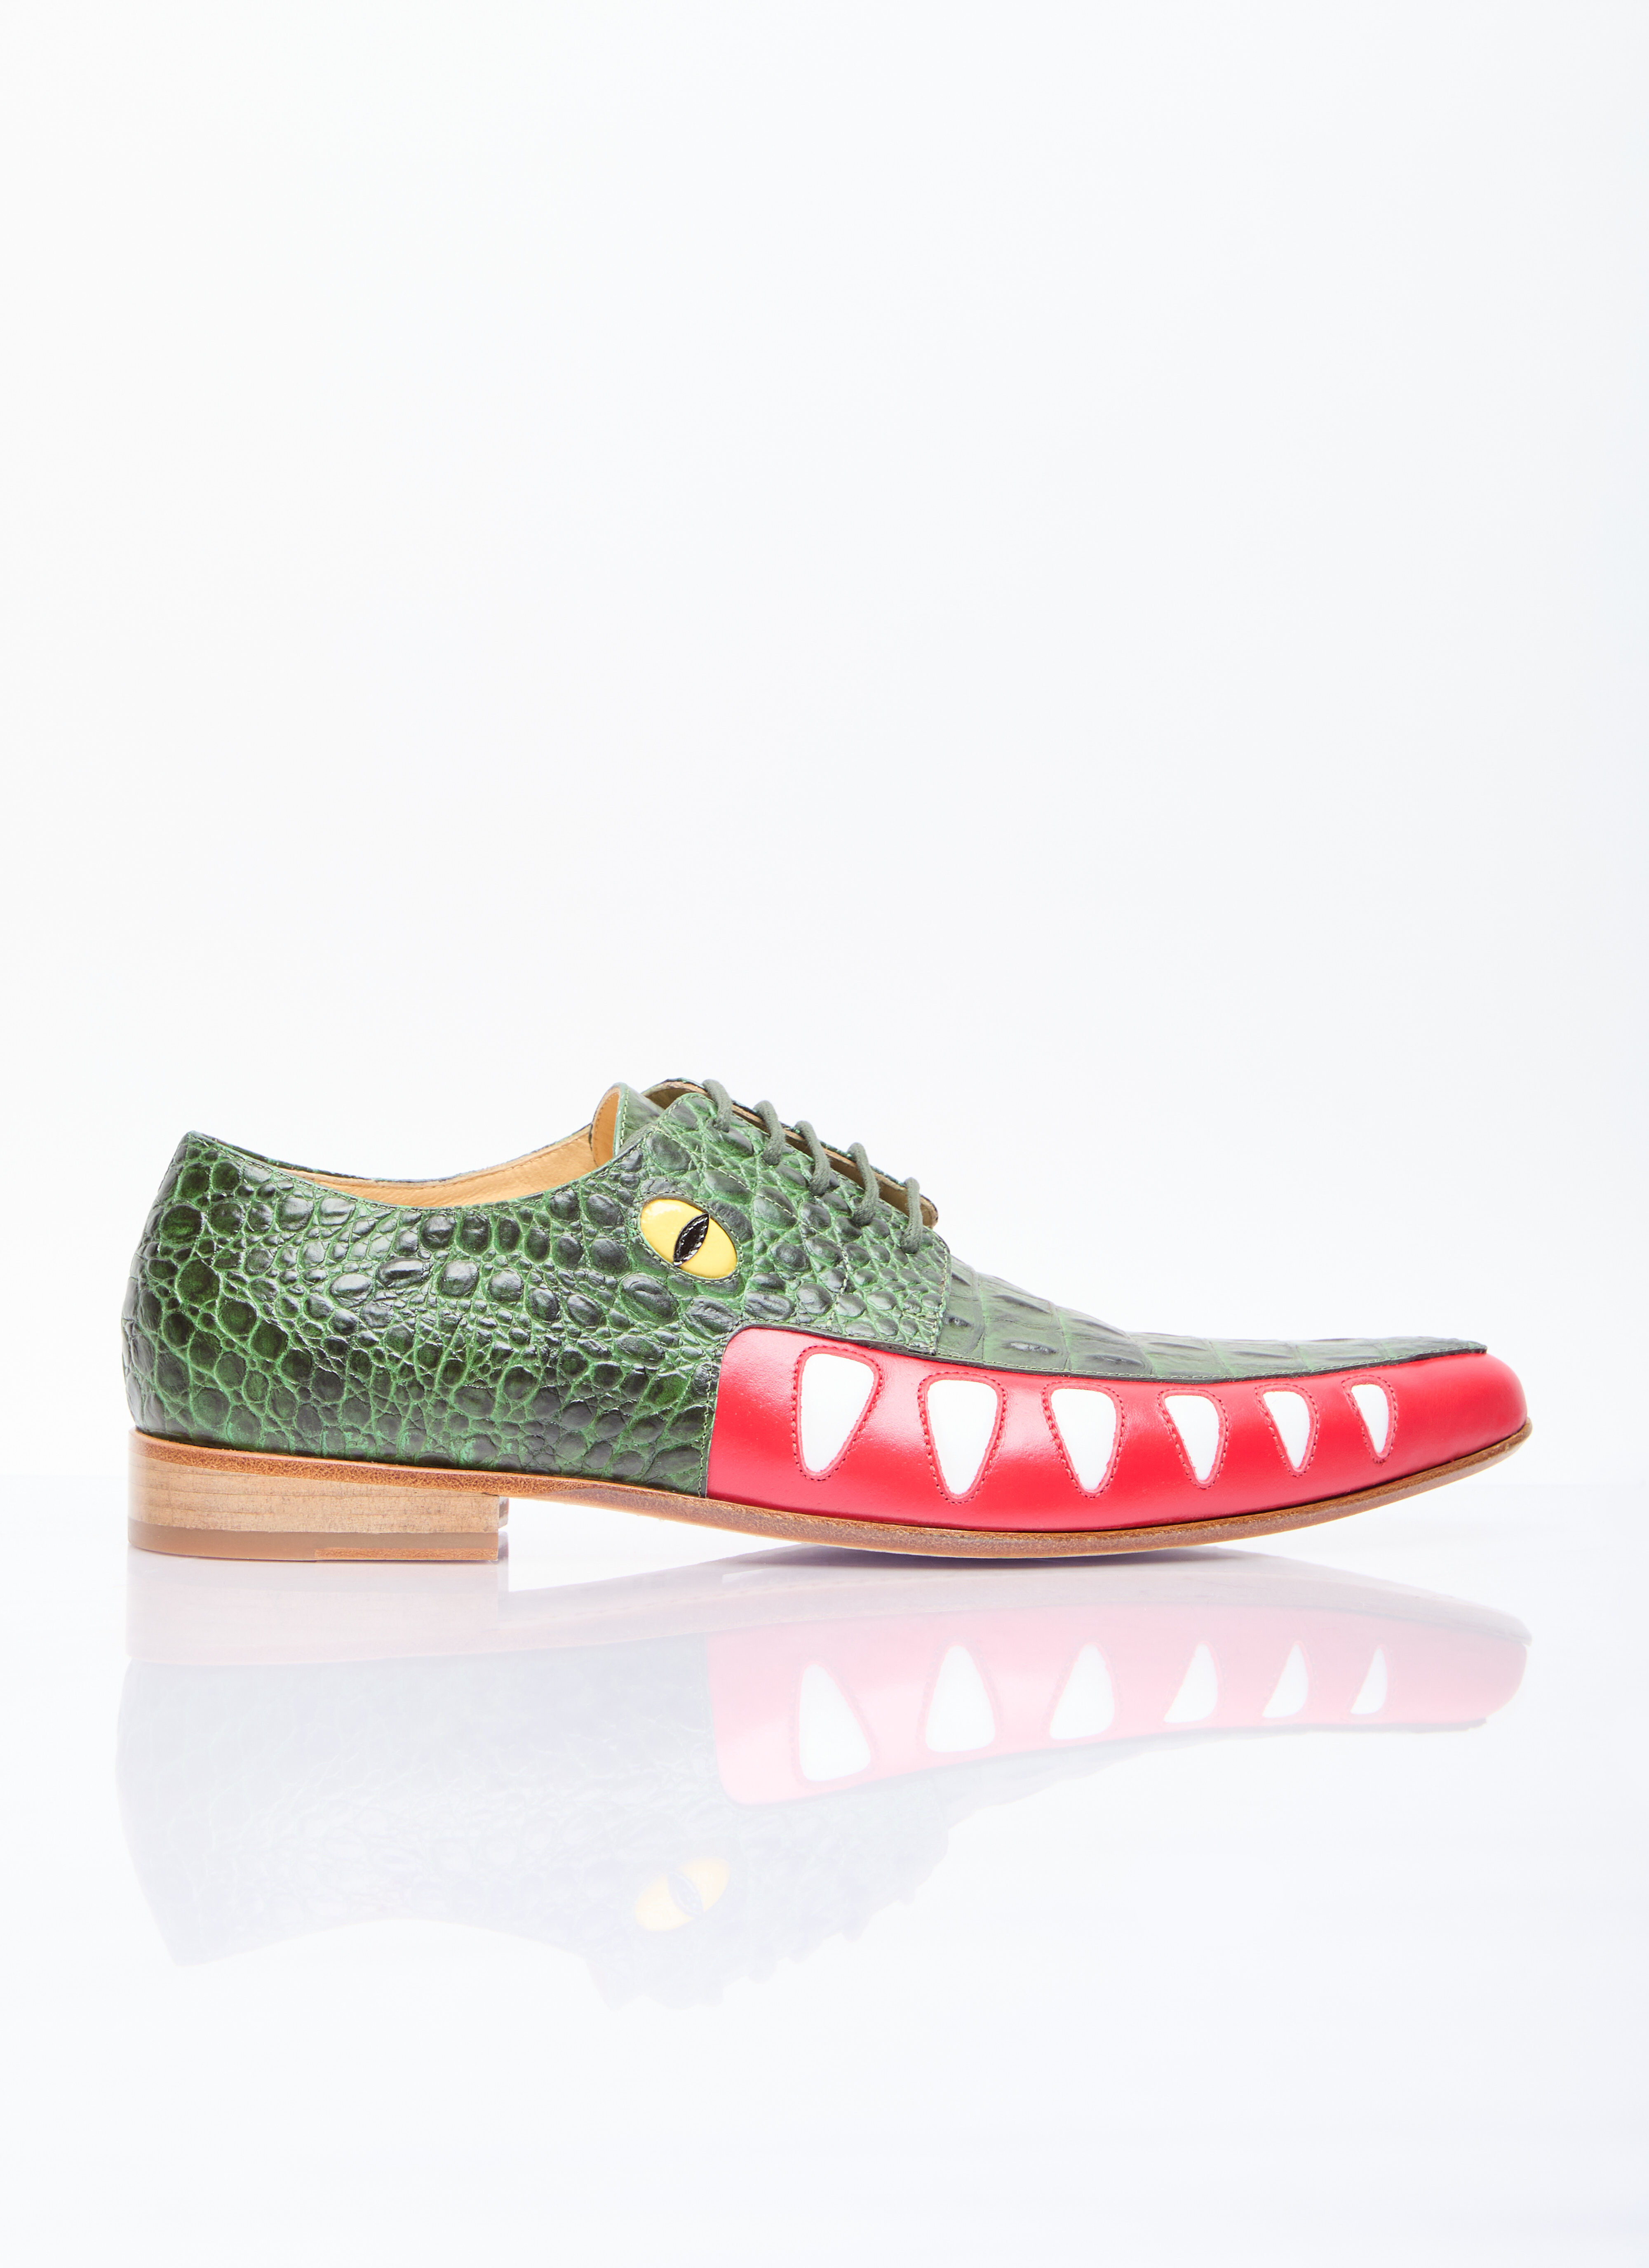 Crocodile Lace-Up Shoes